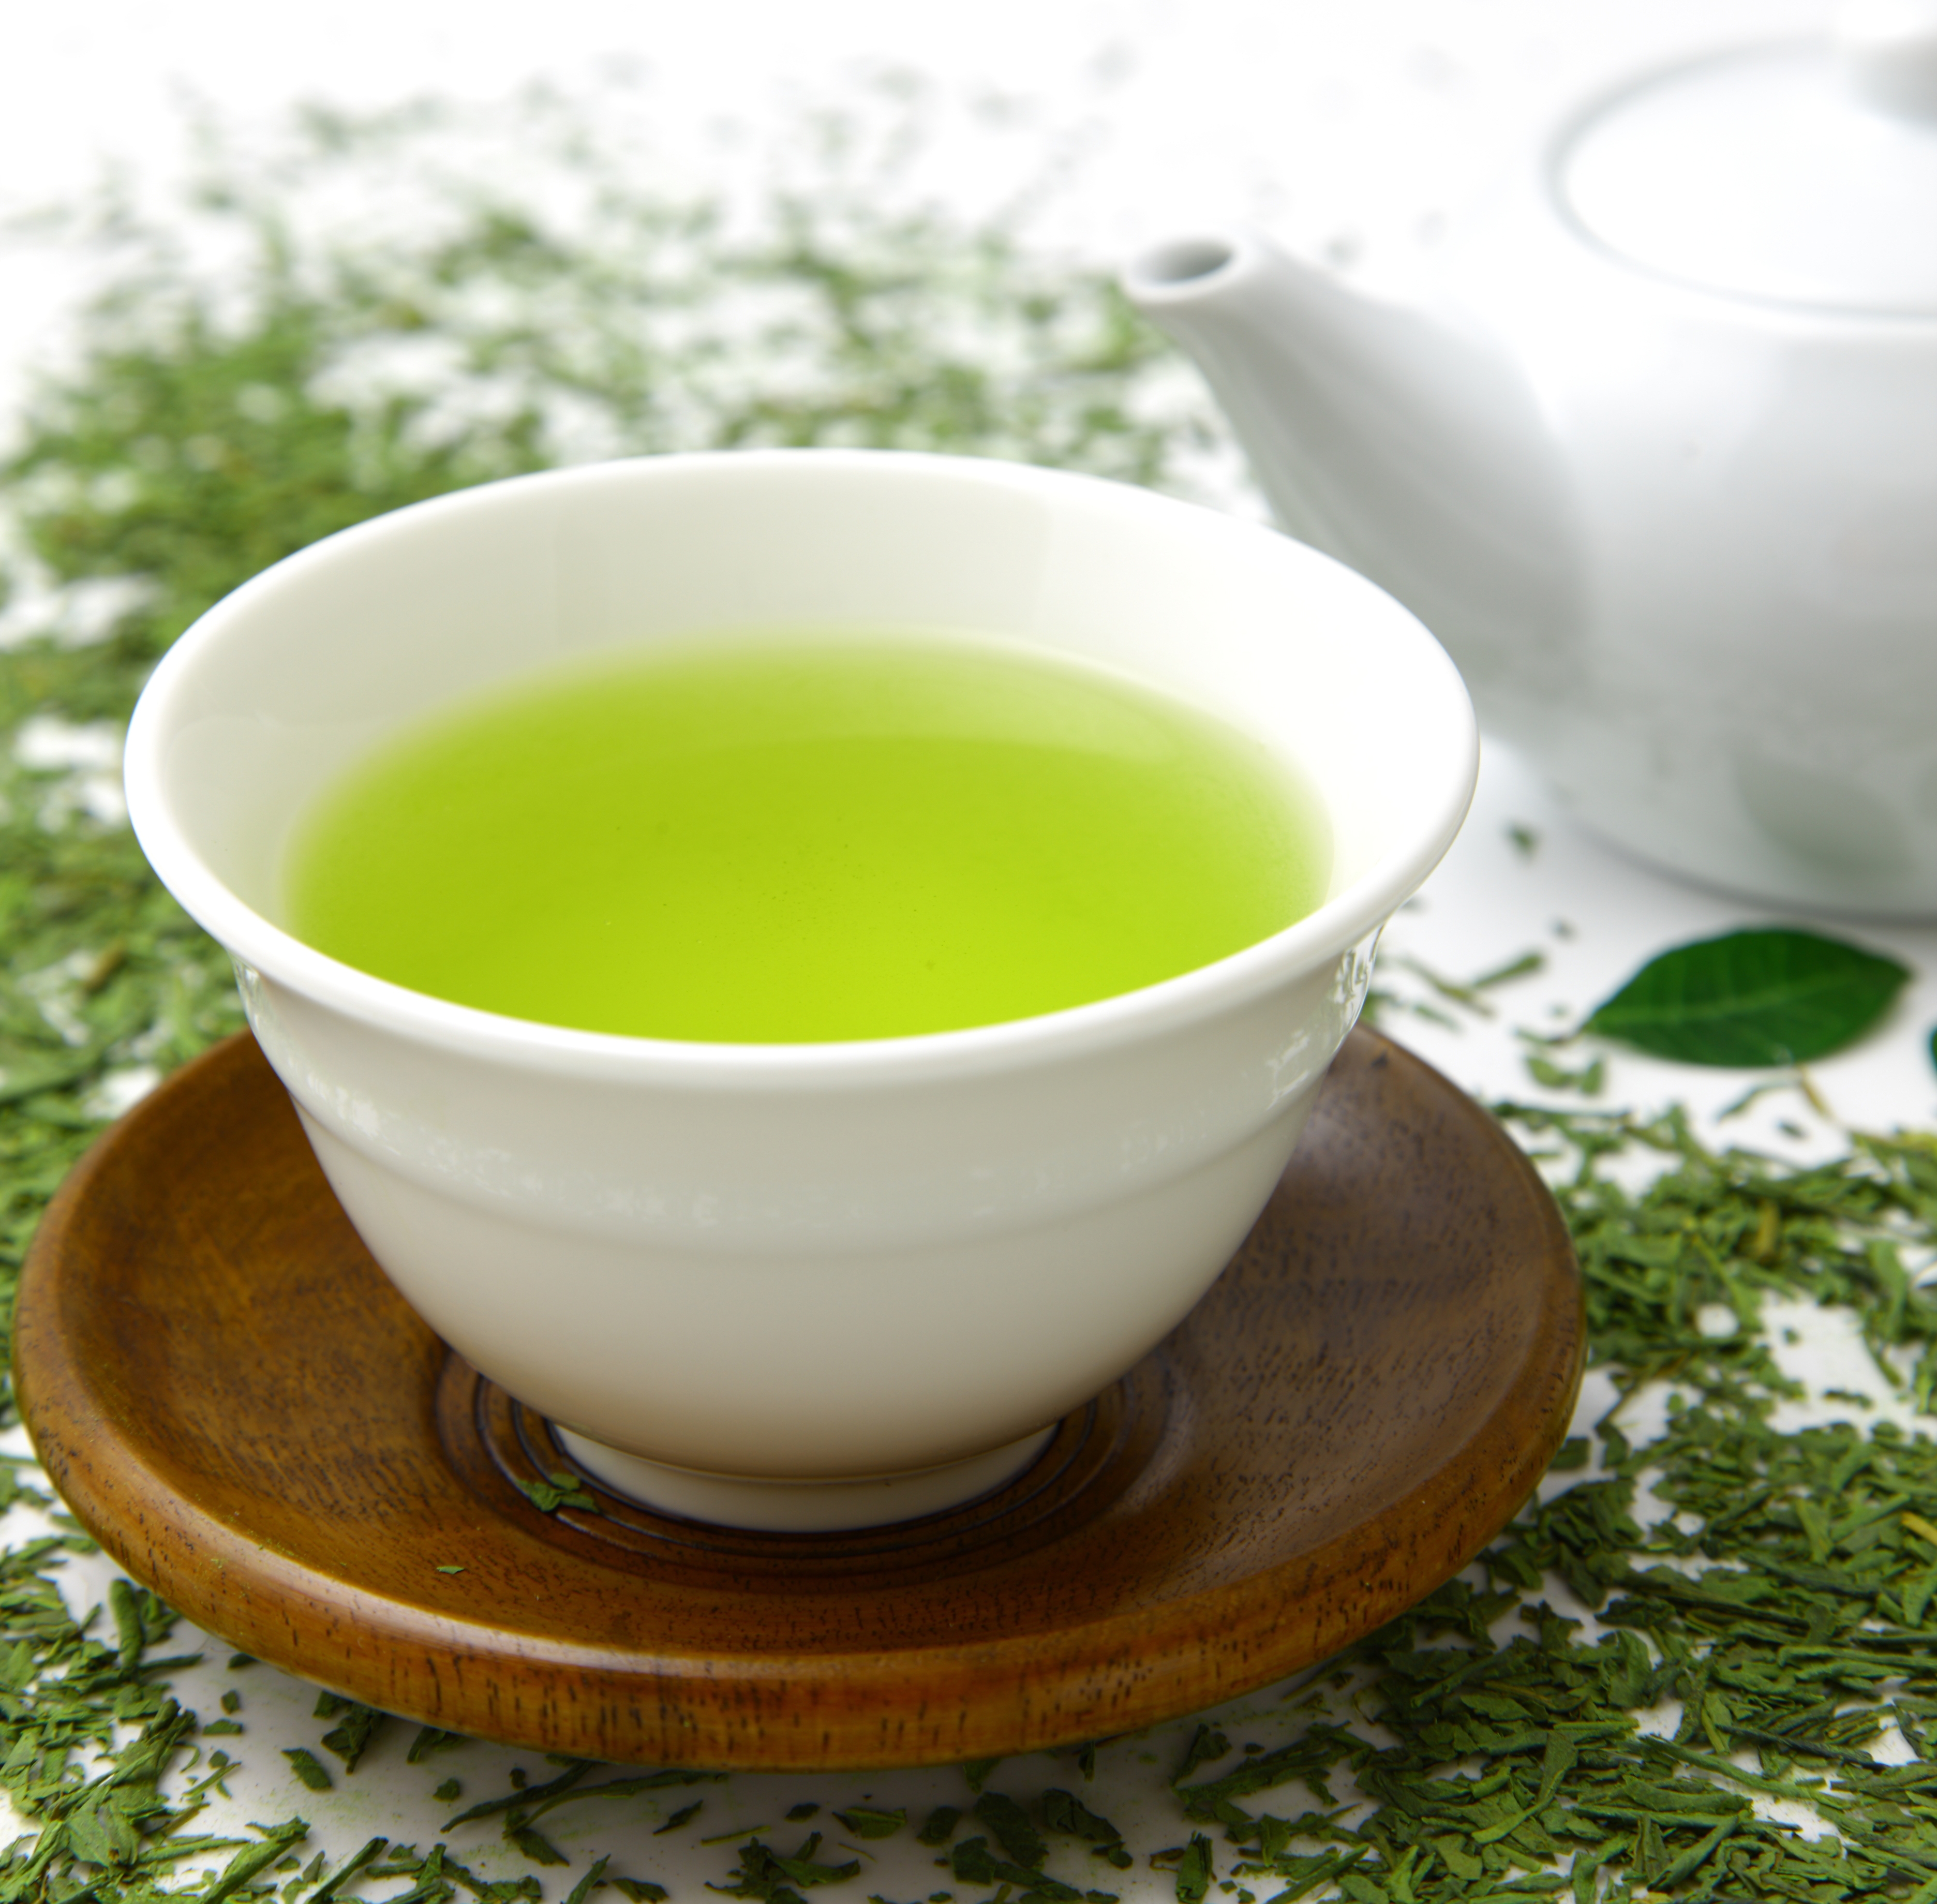 Estudios han demostrado que el té verde puede ayudar a prevenir el desarrollo de ciertos tipos de cánceres y a retardar el proceso del envejecimiento temprano.